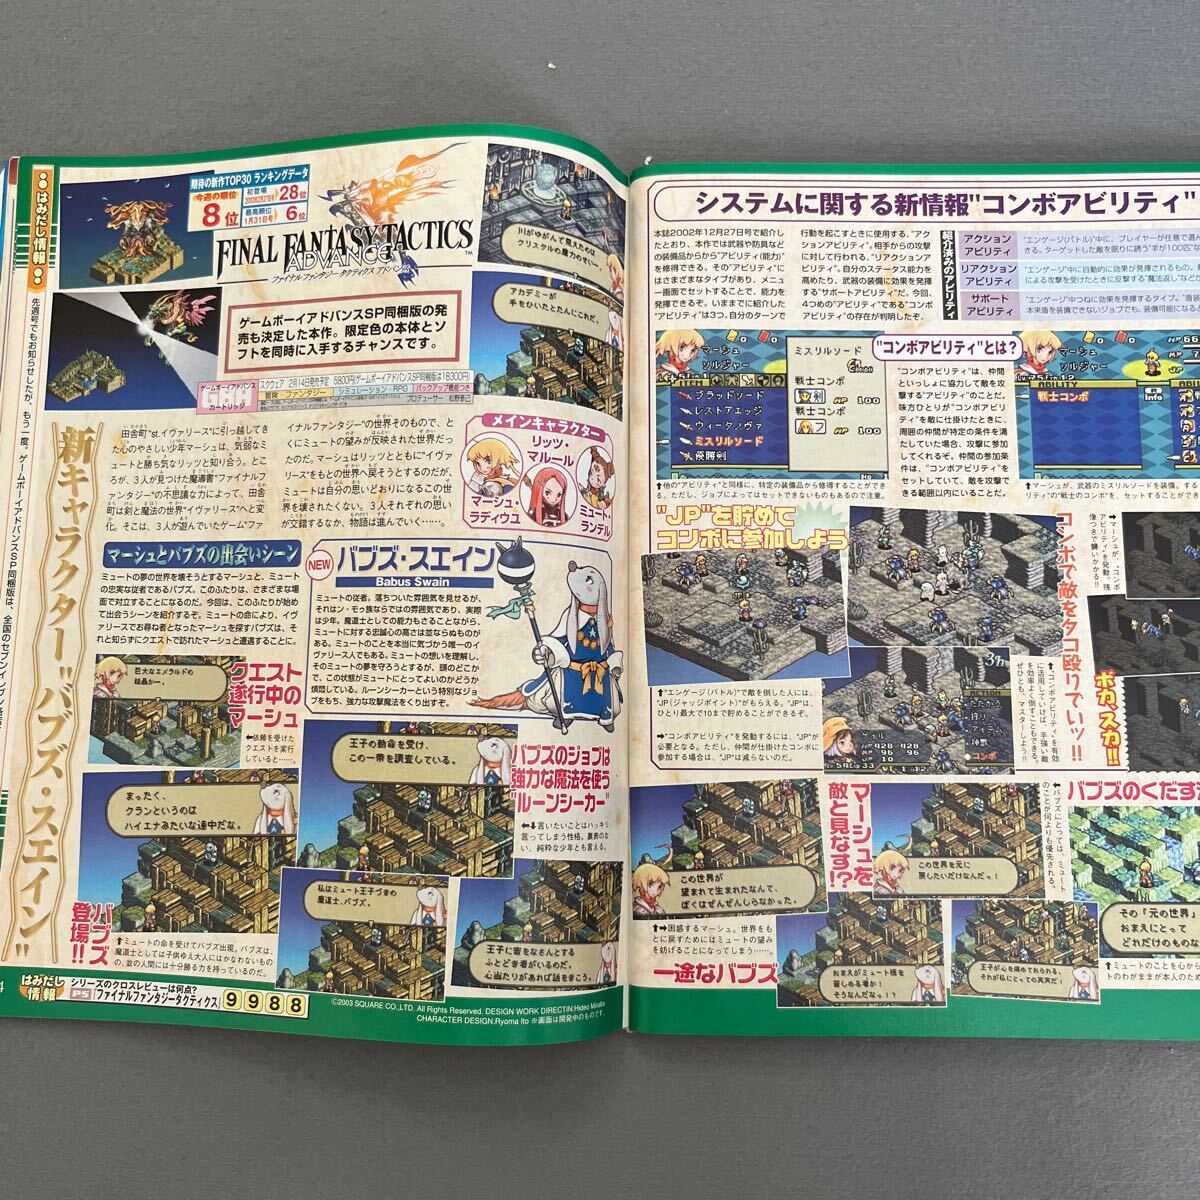  еженедельный Fami expert *2003 год 2 месяц 7 день номер * Final Fantasy X-2* Final Fantasy Tacty ks advance * Unlimited : SaGa 